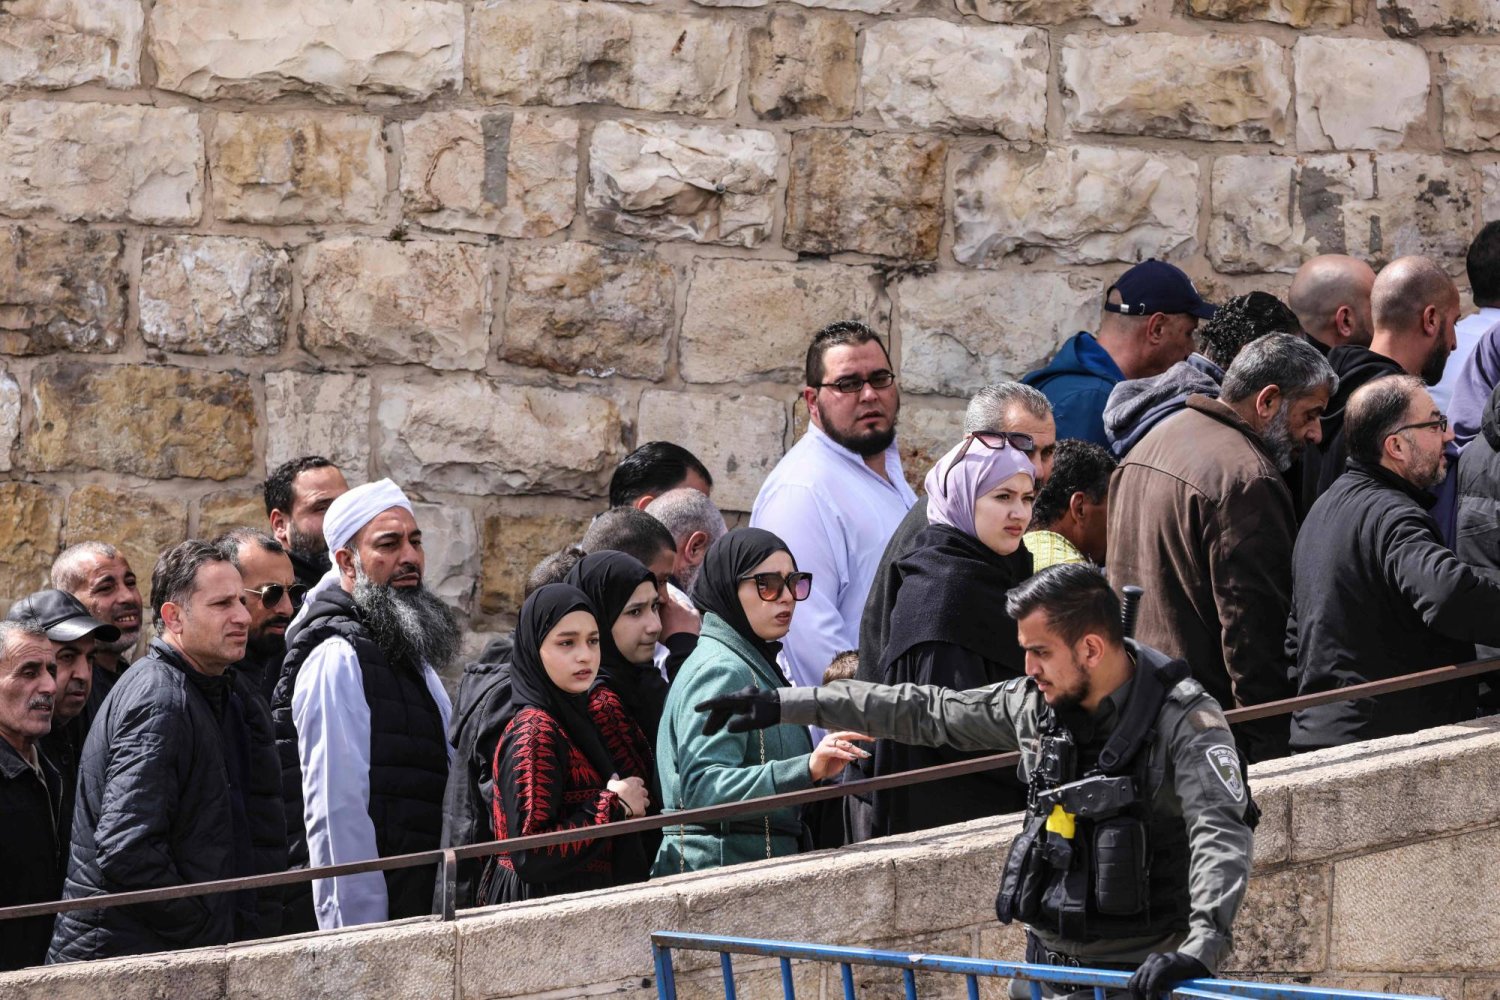 أحد أفراد قوات الأمن الإسرائيلية يقف حراسة أثناء مرور المصلين المسلمين عبر نقطة تفتيش بالقرب من باب الأسباط في القدس لدخول مجمع المسجد الأقصى لأداء صلاة الجمعة